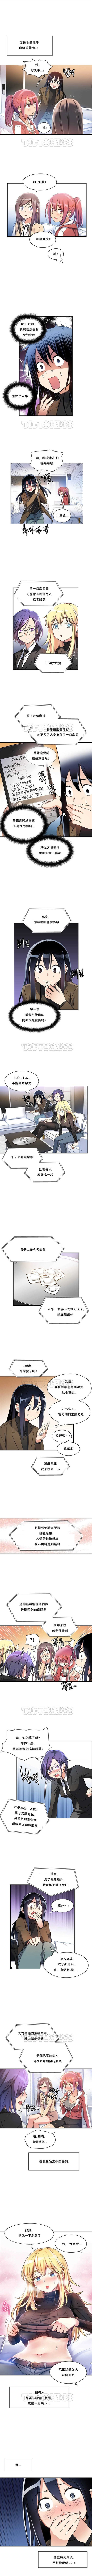 初恋豚鼠 1-30 中文翻译（更新中） page 7 full